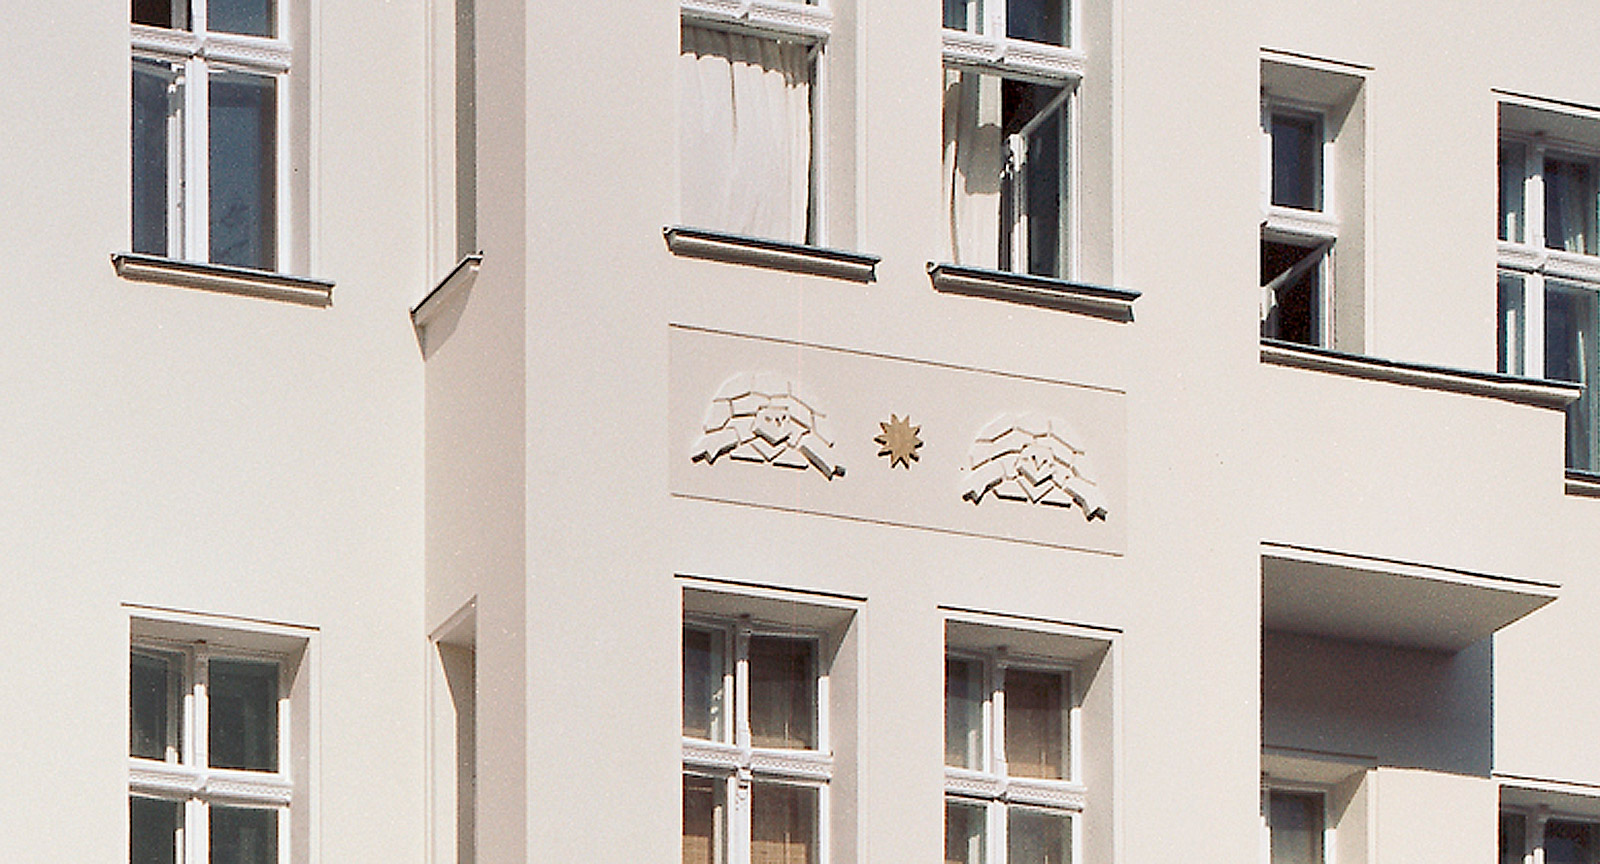 Wohnhaus Dietrich-Bonhoeffer-Straße 18, Berlin-Prenzlauer Berg